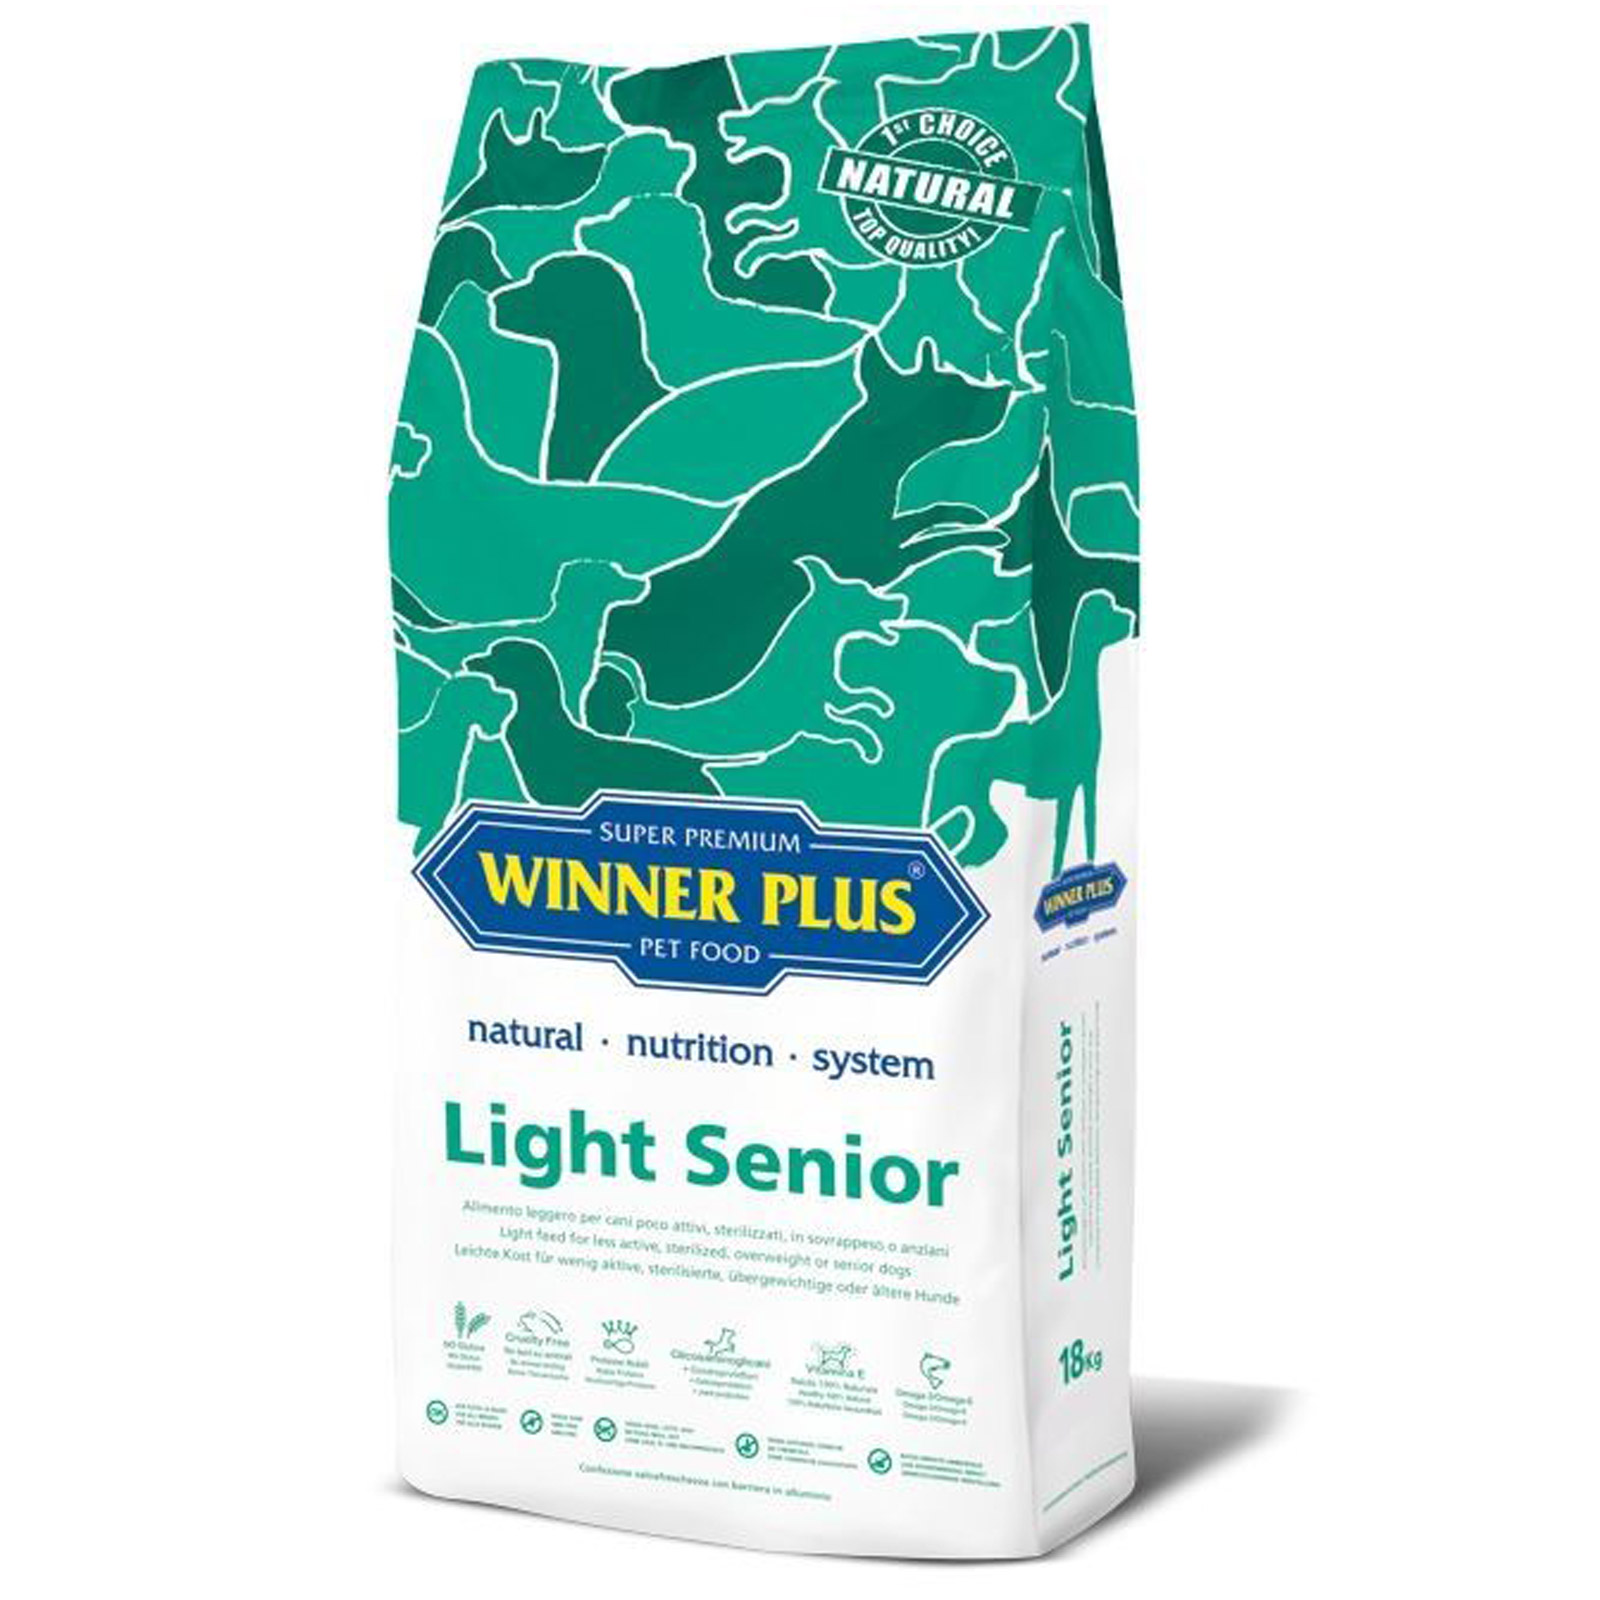 Winner Plus Super Premium Light Senior